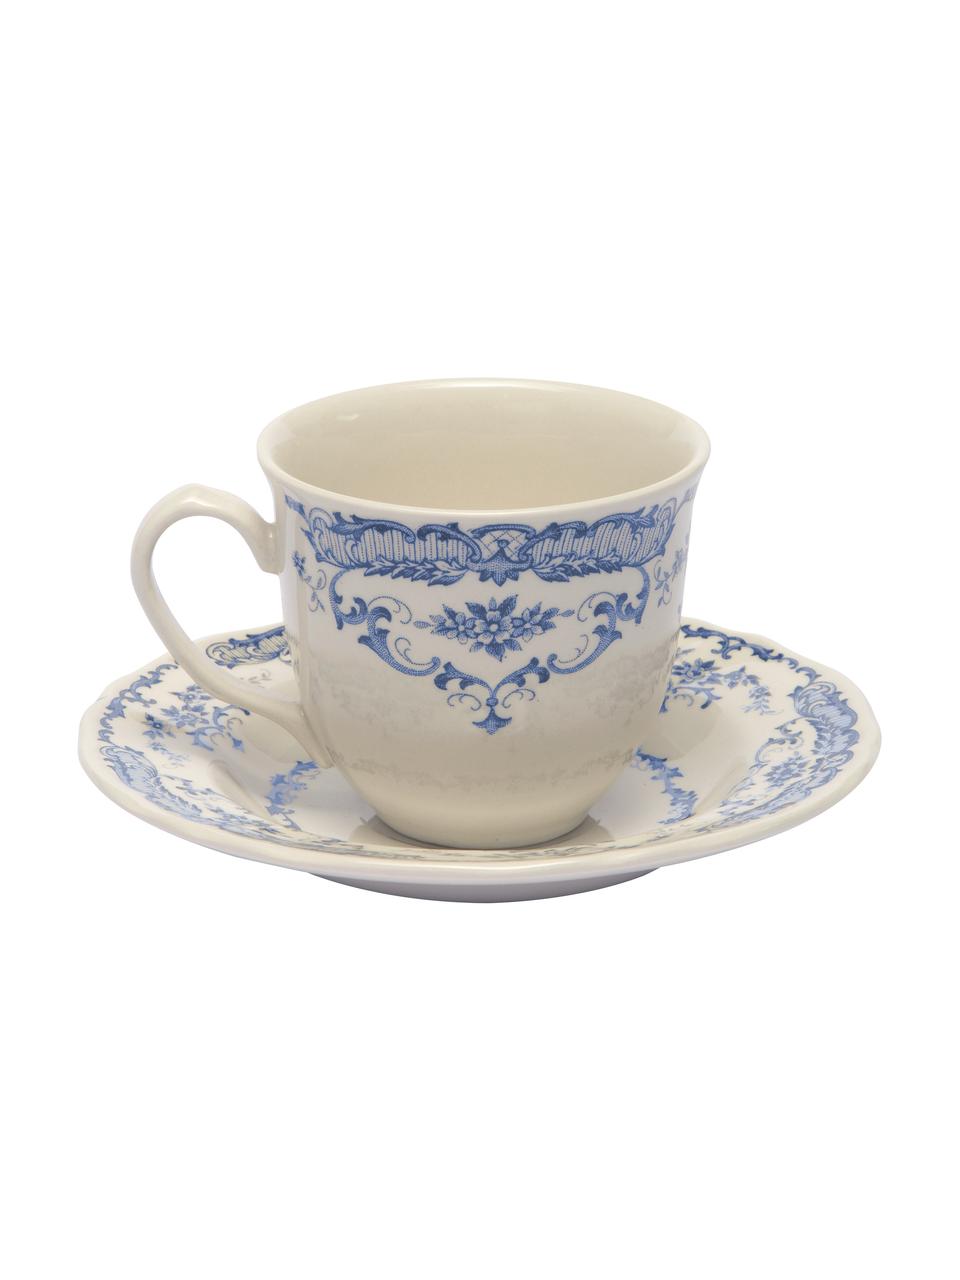 Šálek na čaj s podšálkem s květinovým vzorem Rome, 2 ks, Keramika, Bílá, modrá, Ø 9 cm, V 8 cm, 250 ml